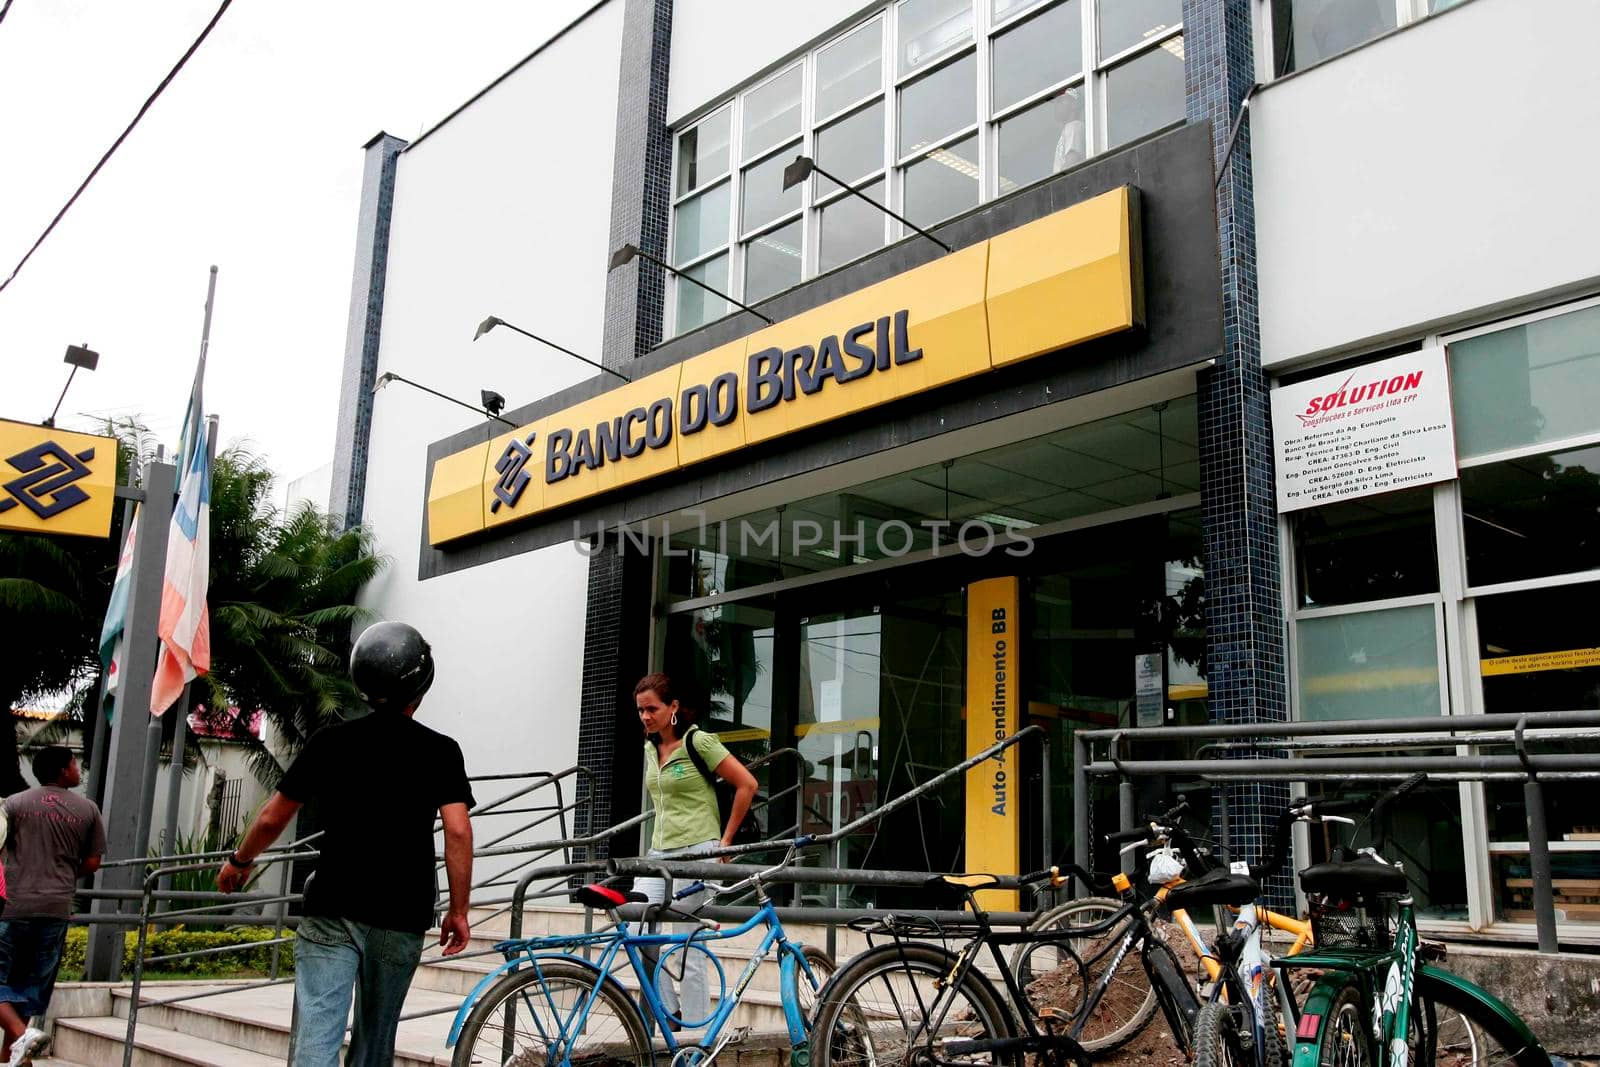 eunapolis, bahia / brazil - november 11, 2009: View of the facade of Banco do Brasil branch in the city of Eunapolis.